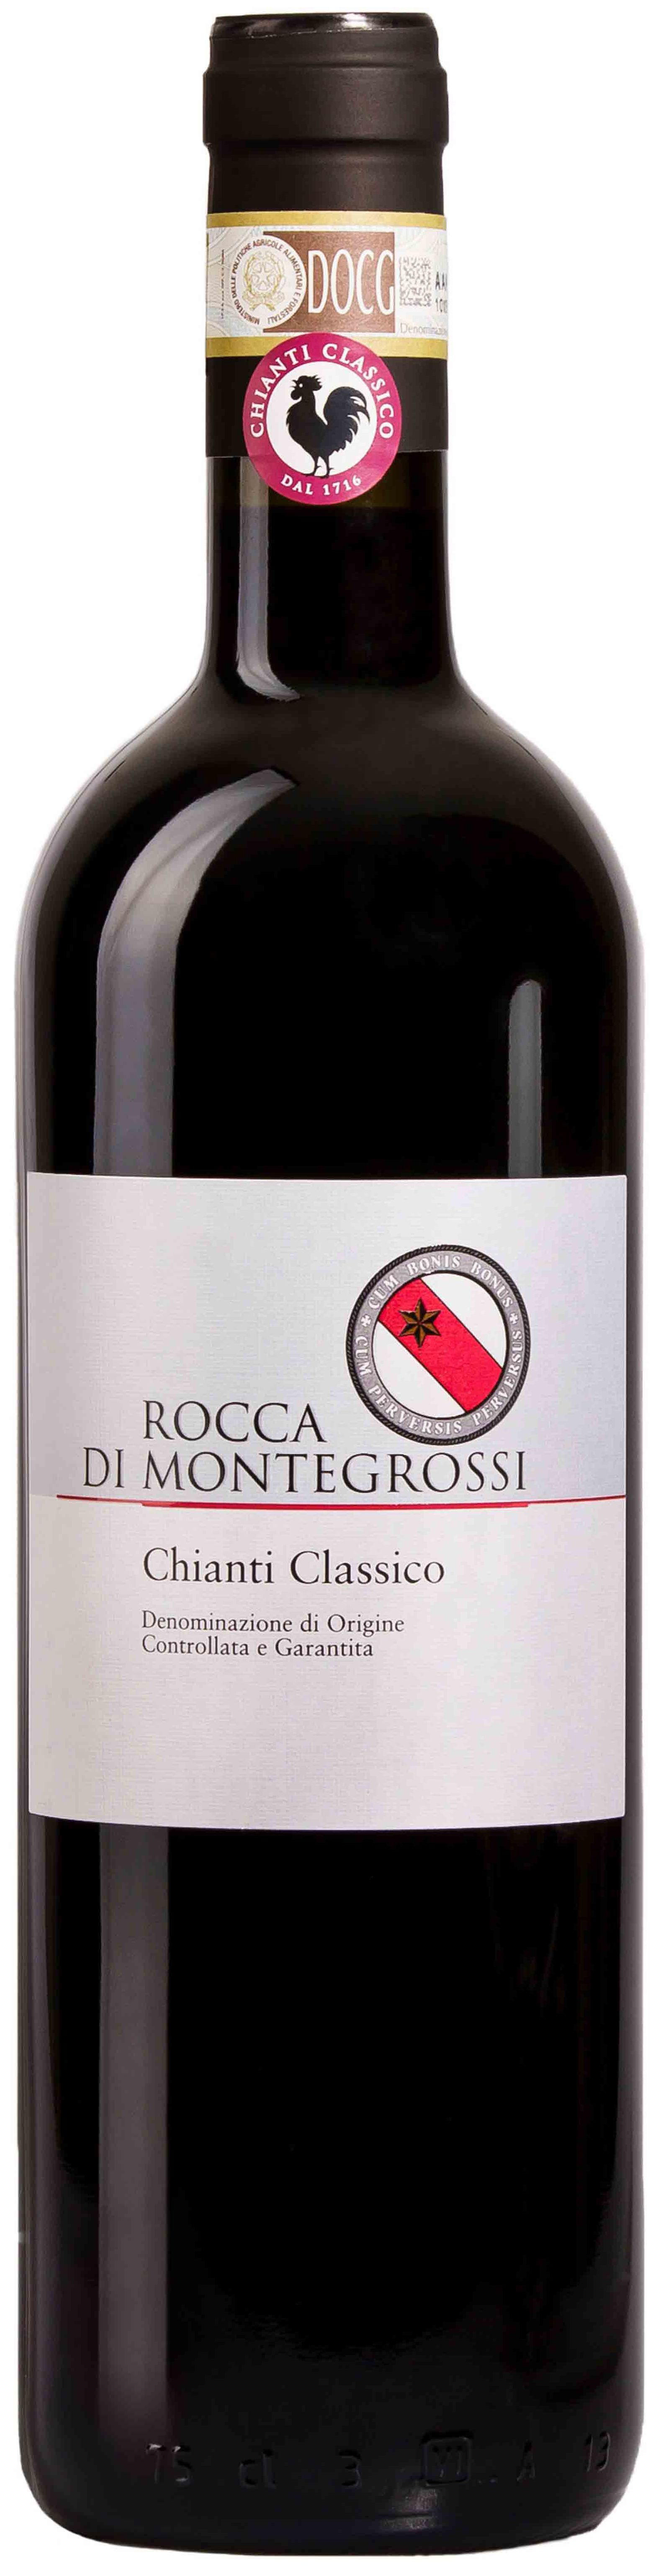 Rocca Di Montegrossi, Chianti Classico, 2005